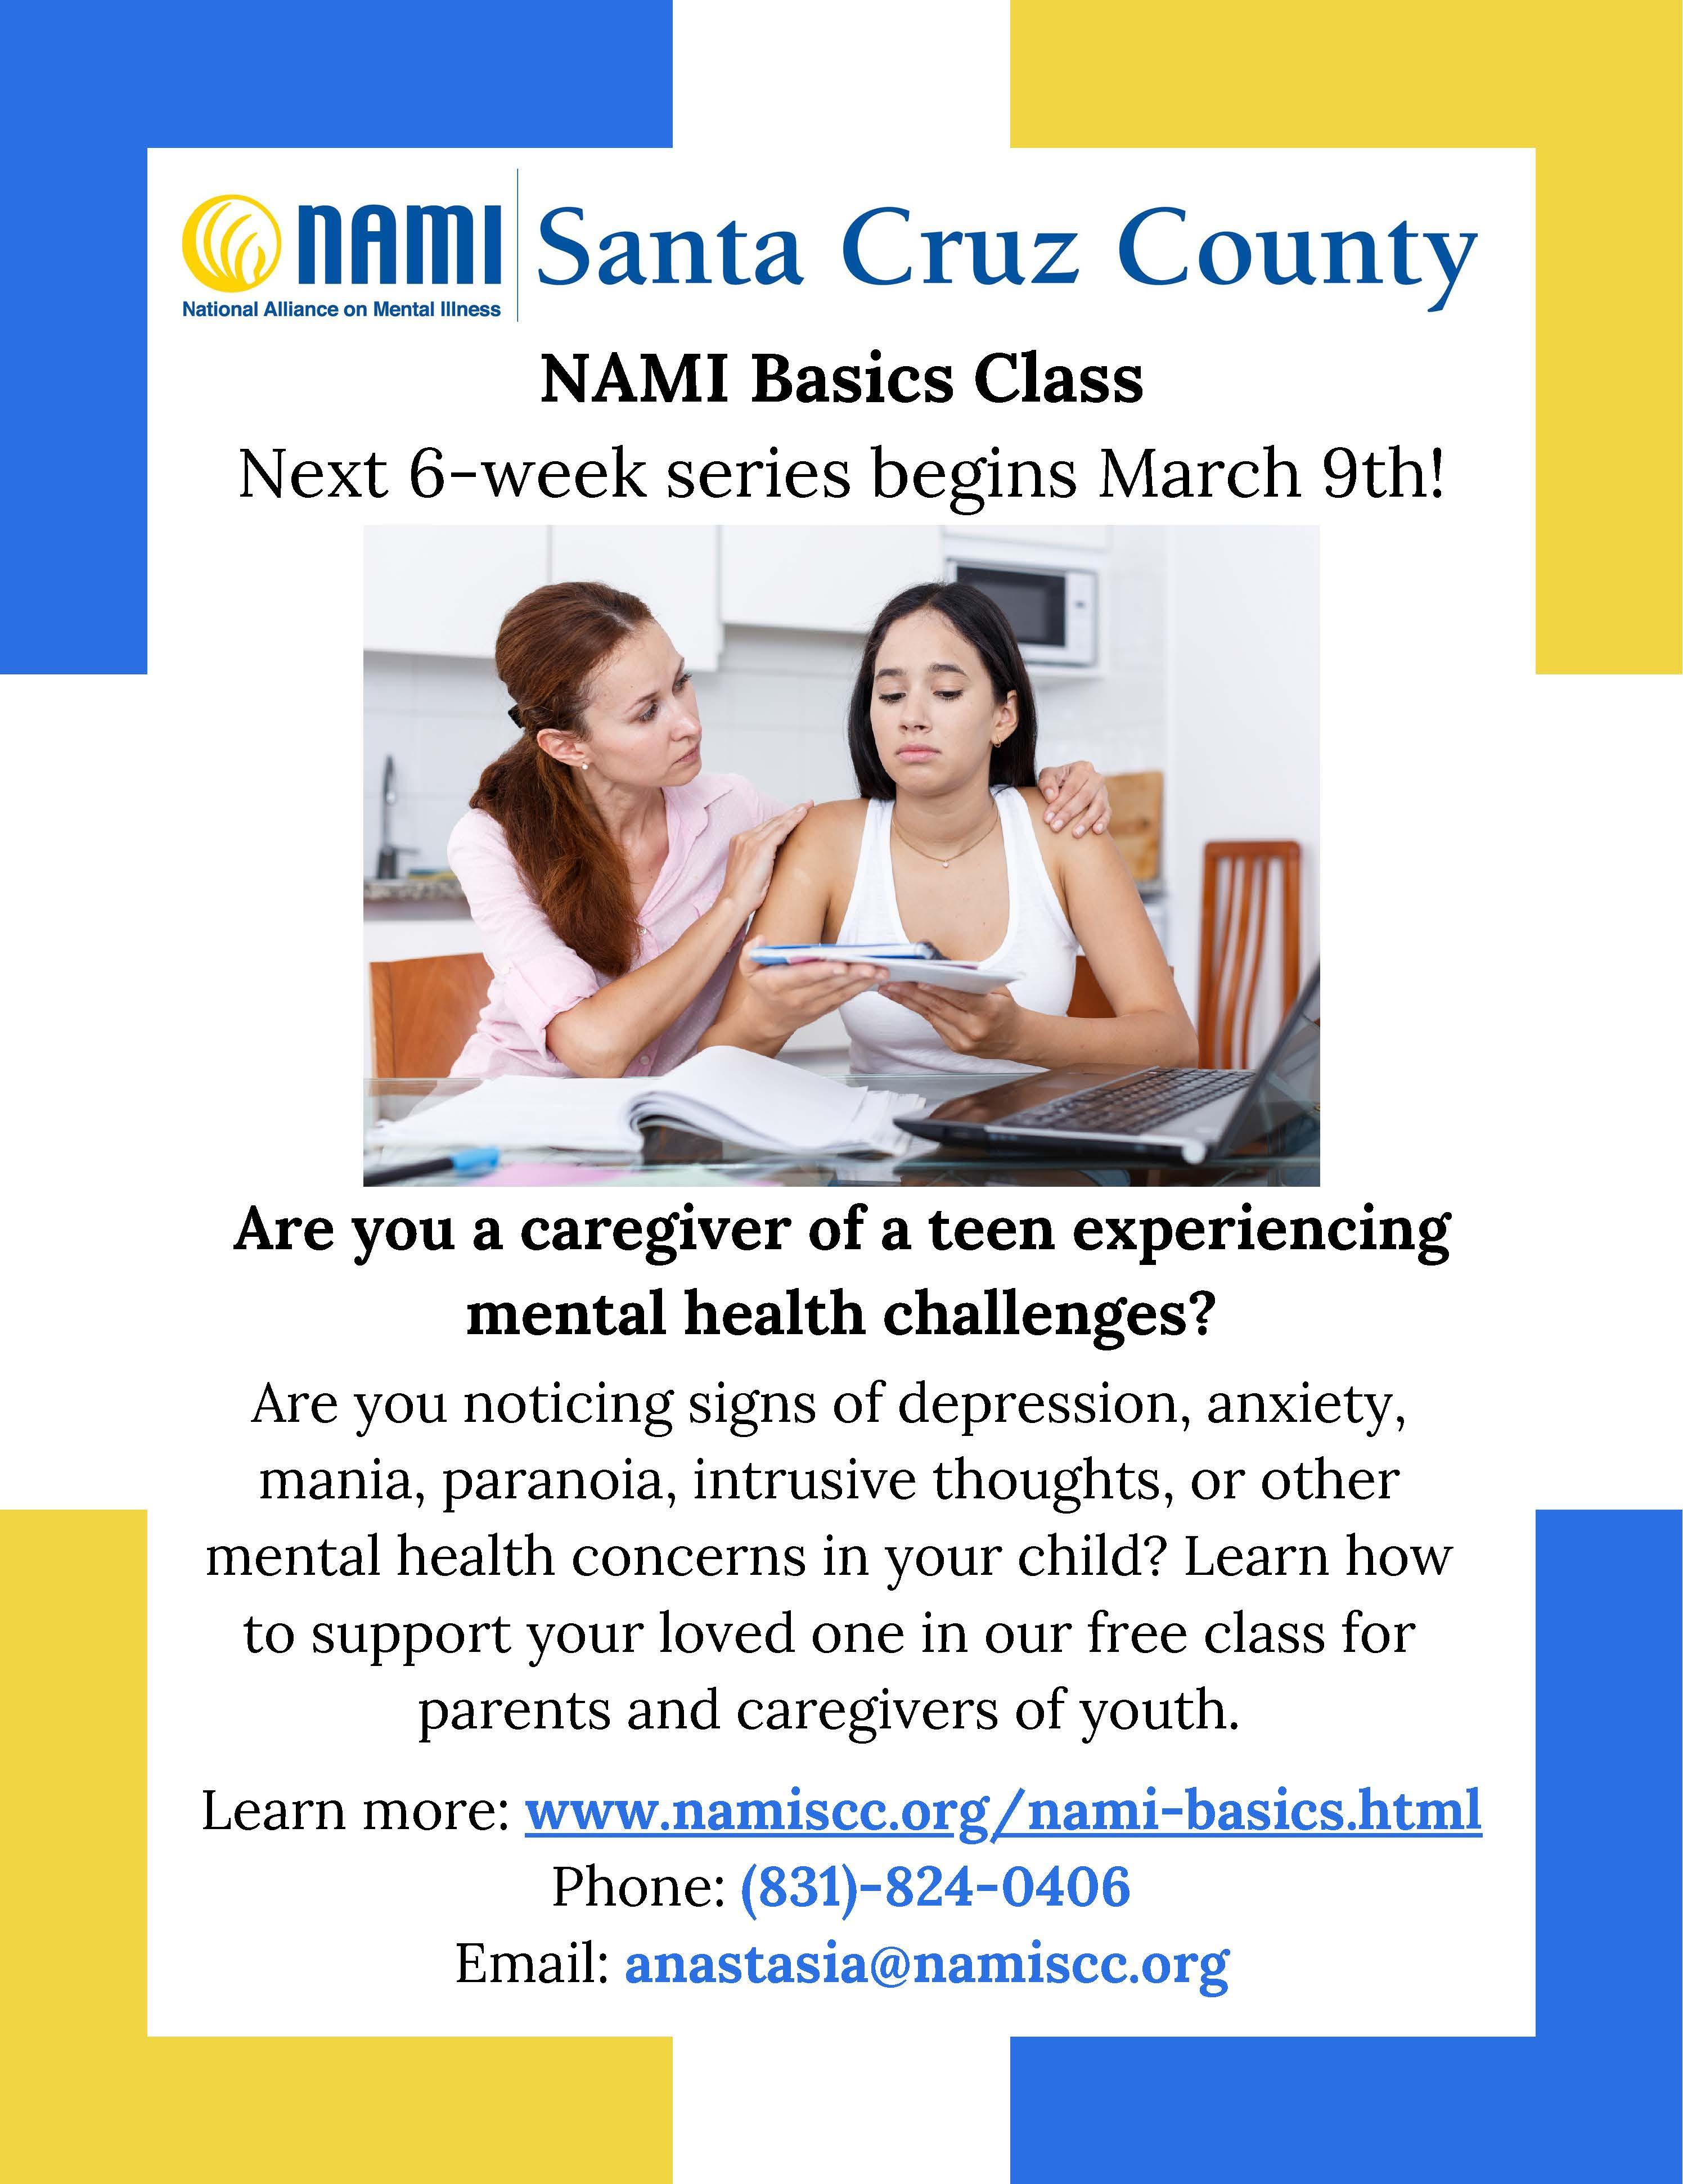 NAMI  Basics Class; call 831-824-0406 for details